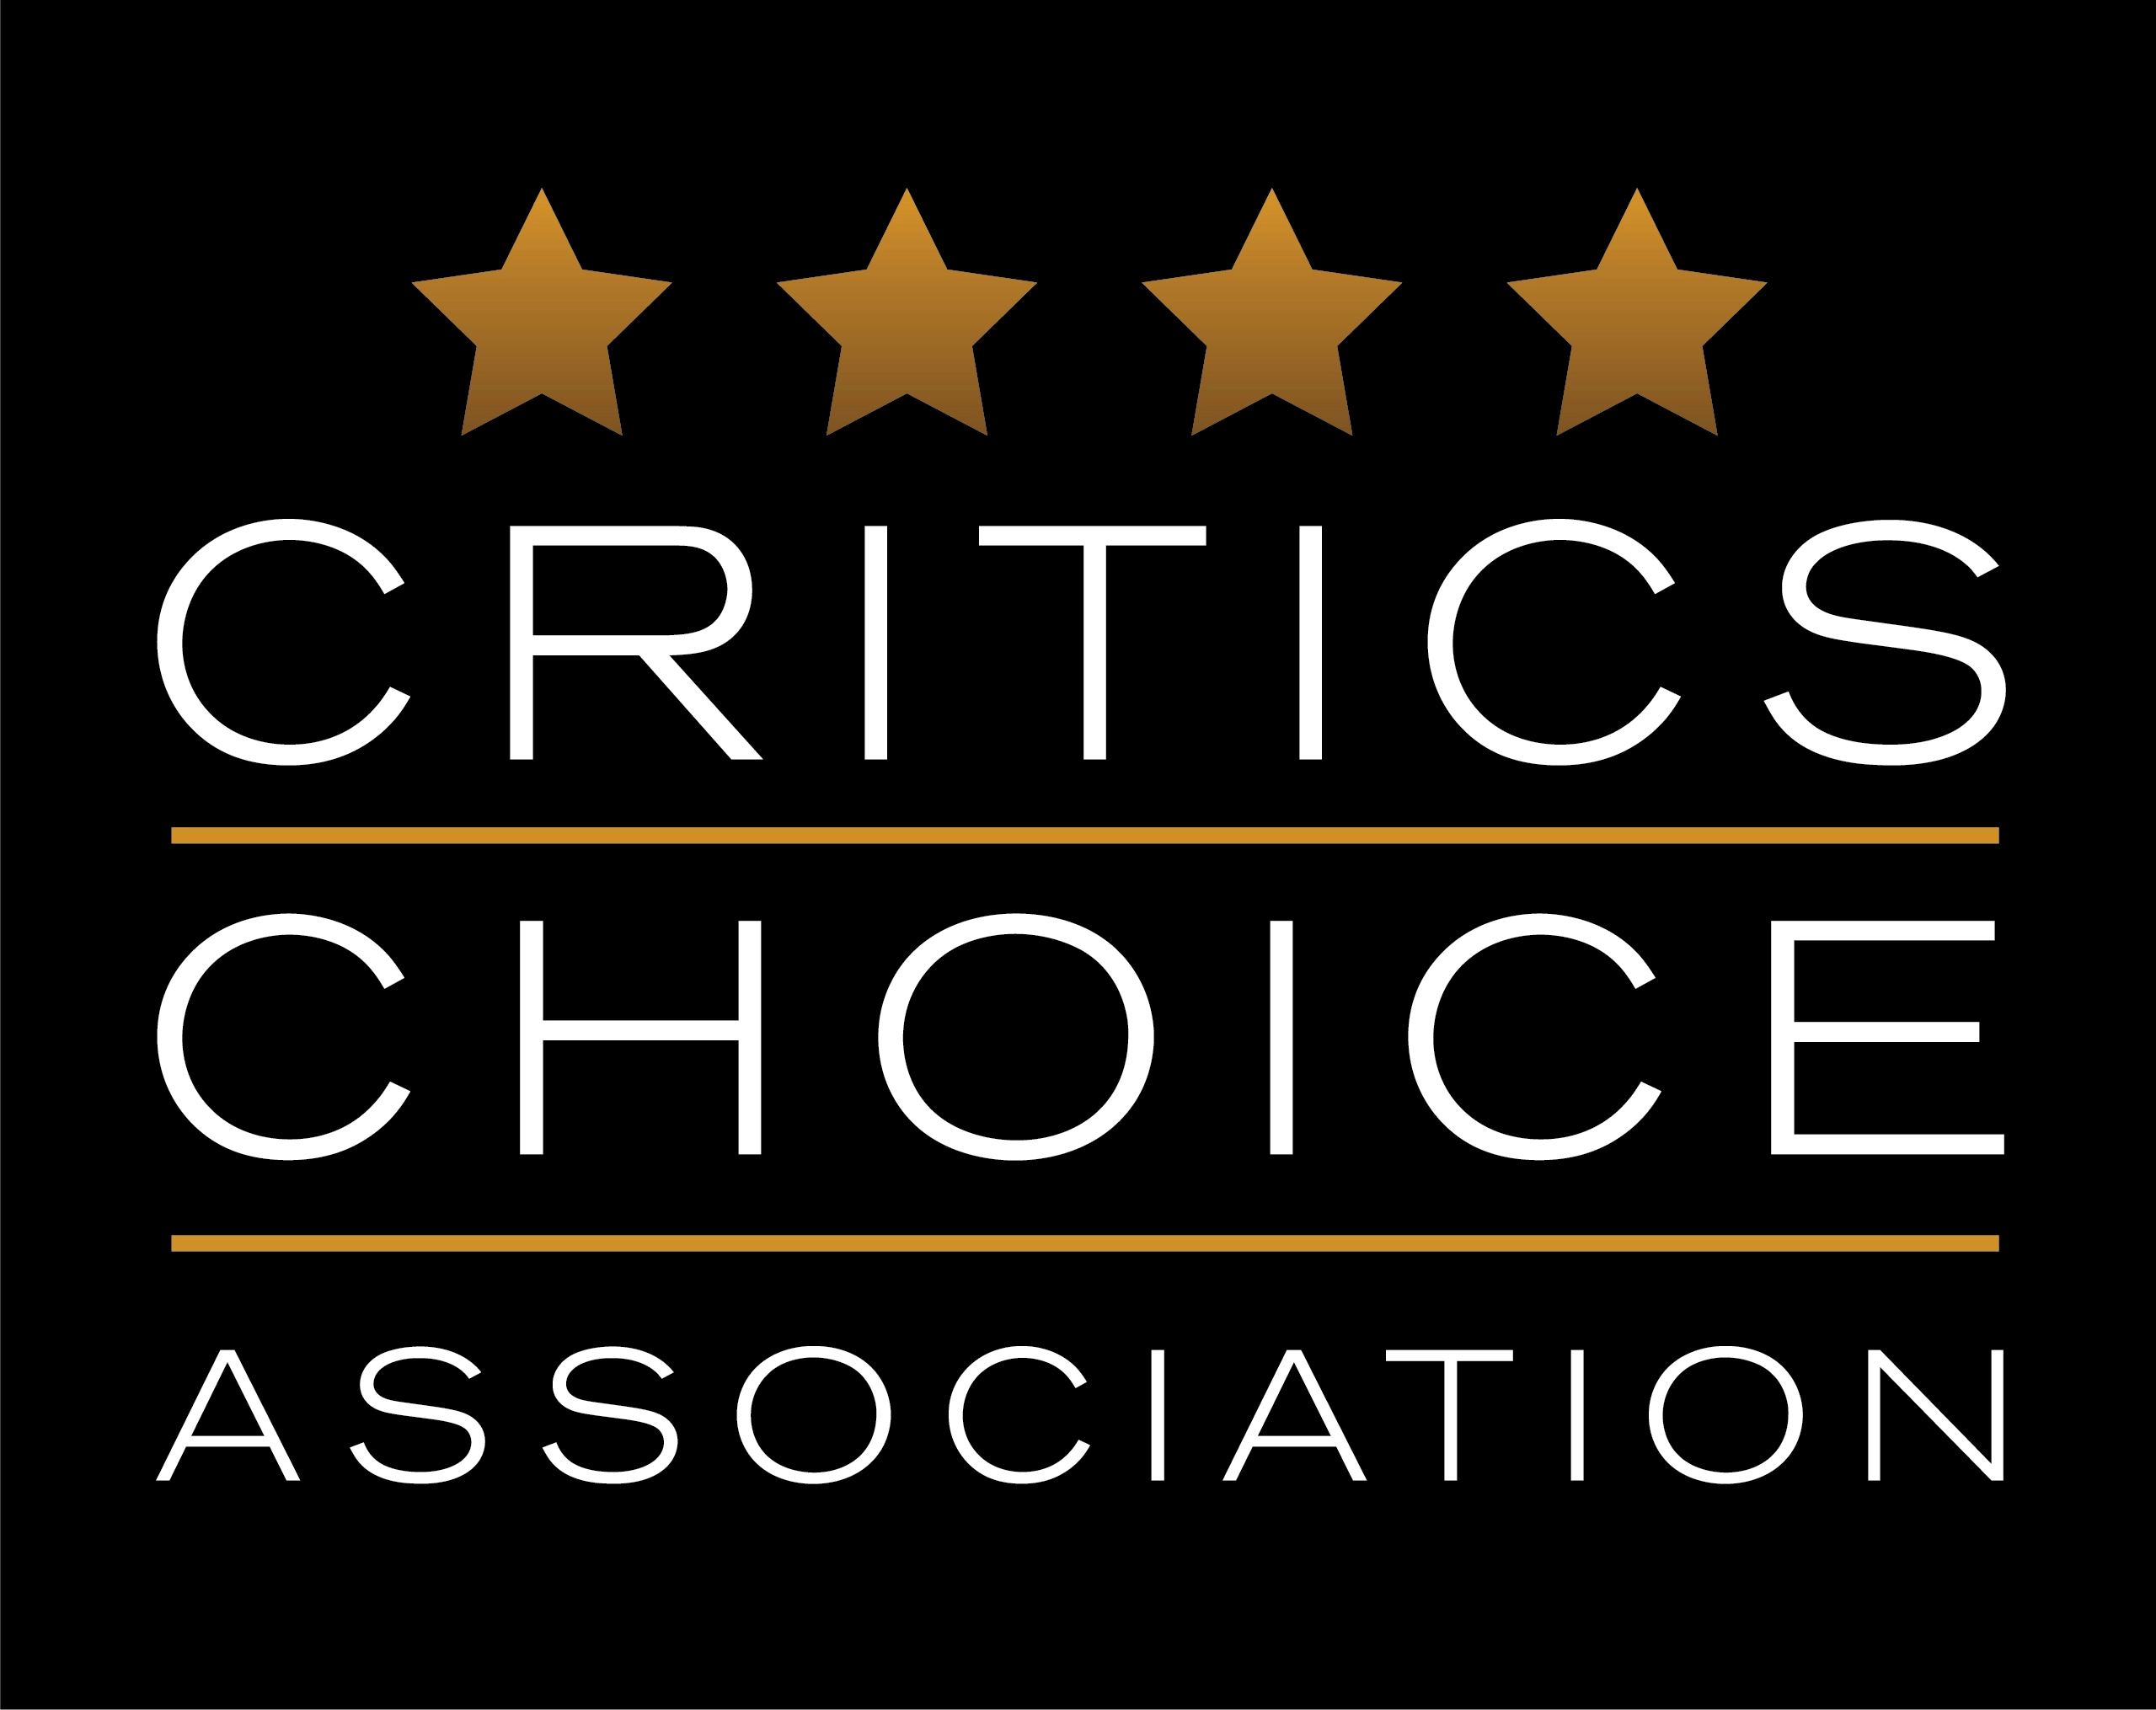 Critics Choice TV: Abbott Elementary in testa con 6 nomination, seguito da Better Call Saul con 5